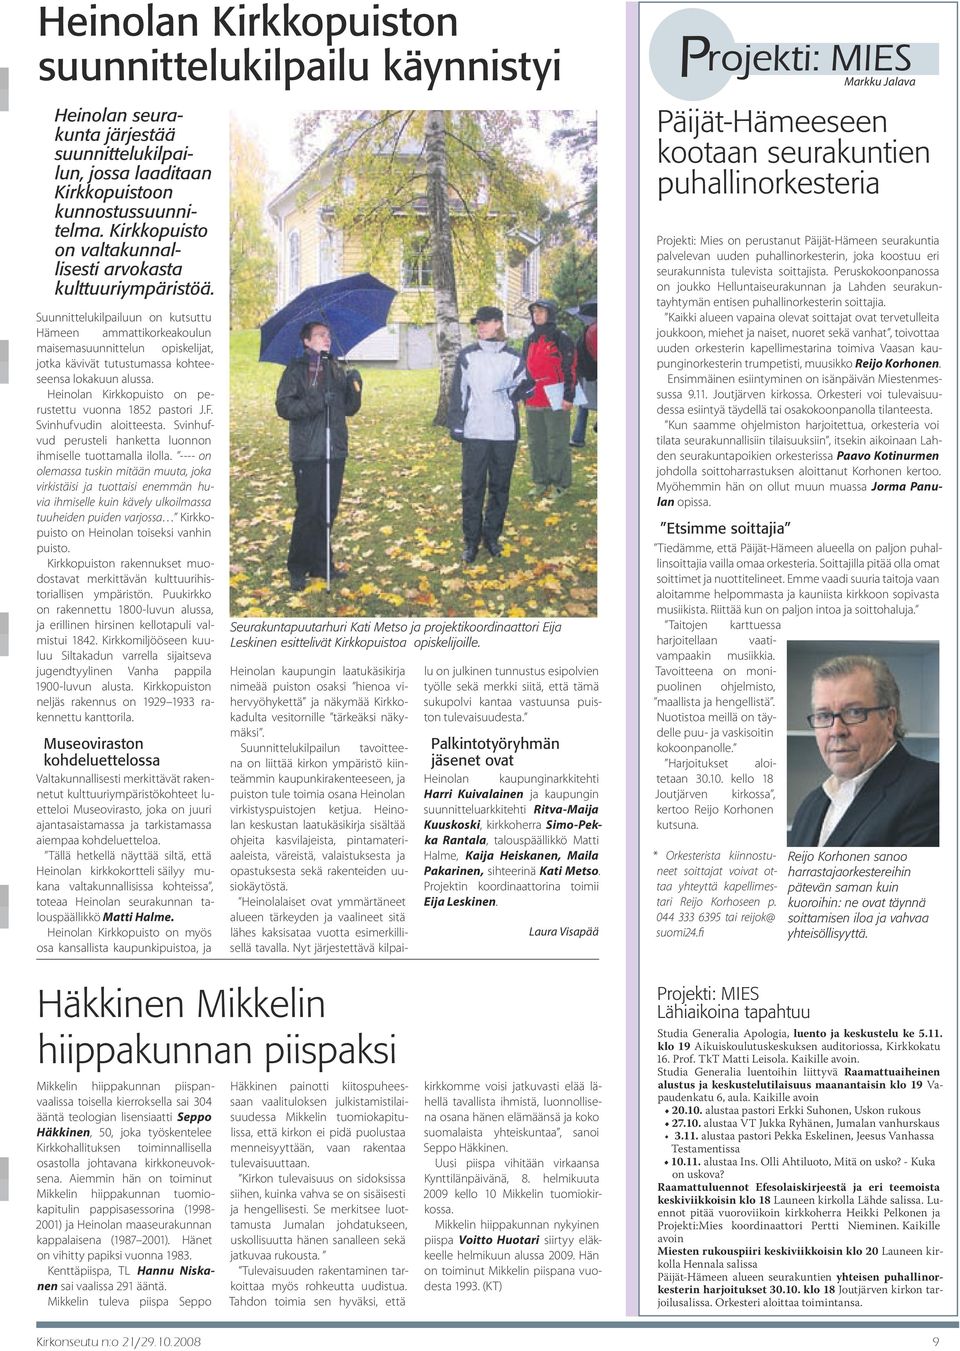 Suunnittelukilpailuun on kutsuttu Hämeen ammattikorkeakoulun maisemasuunnittelun opiskelijat, jotka kävivät tutustumassa kohteeseensa lokakuun alussa.